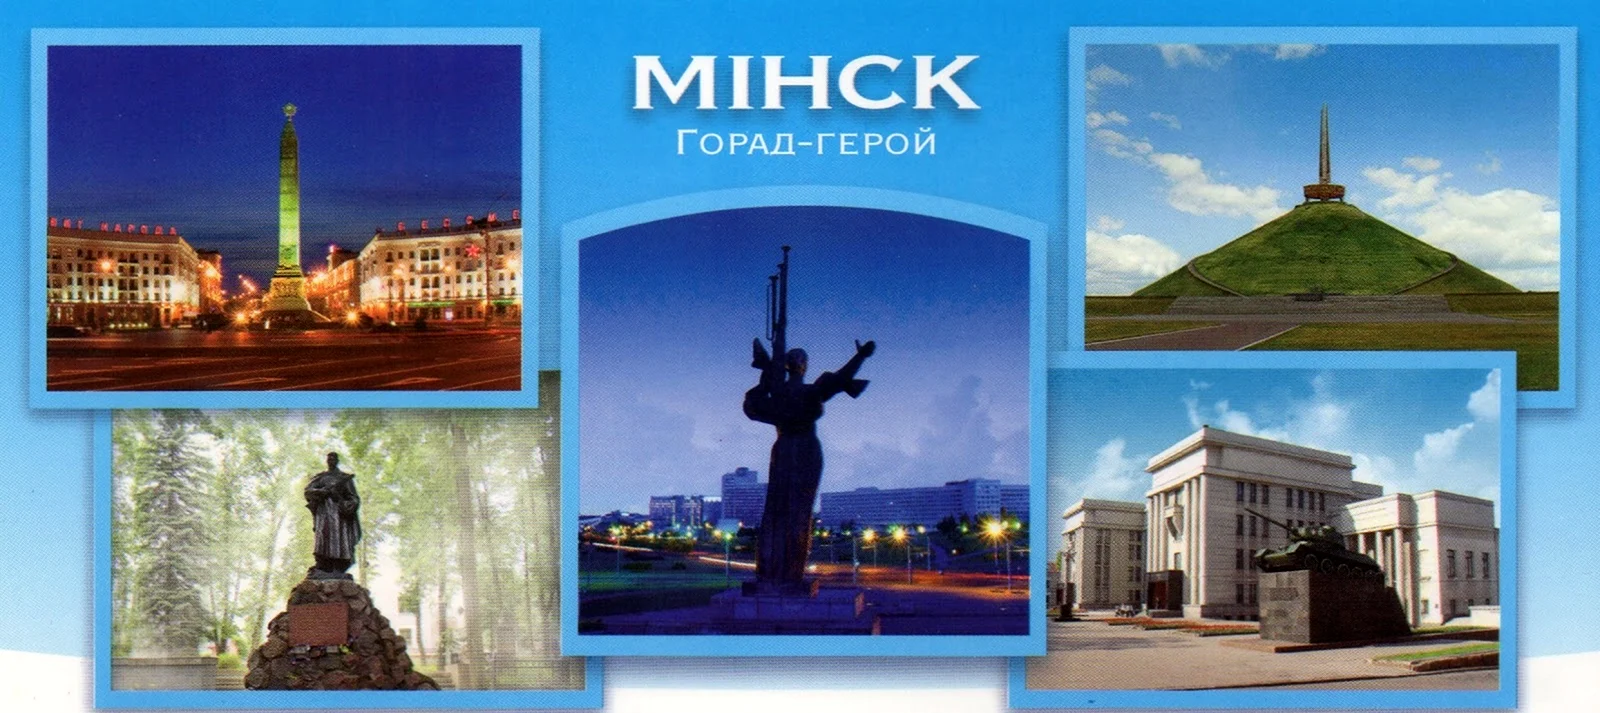 1974 — Минск «город-герой».